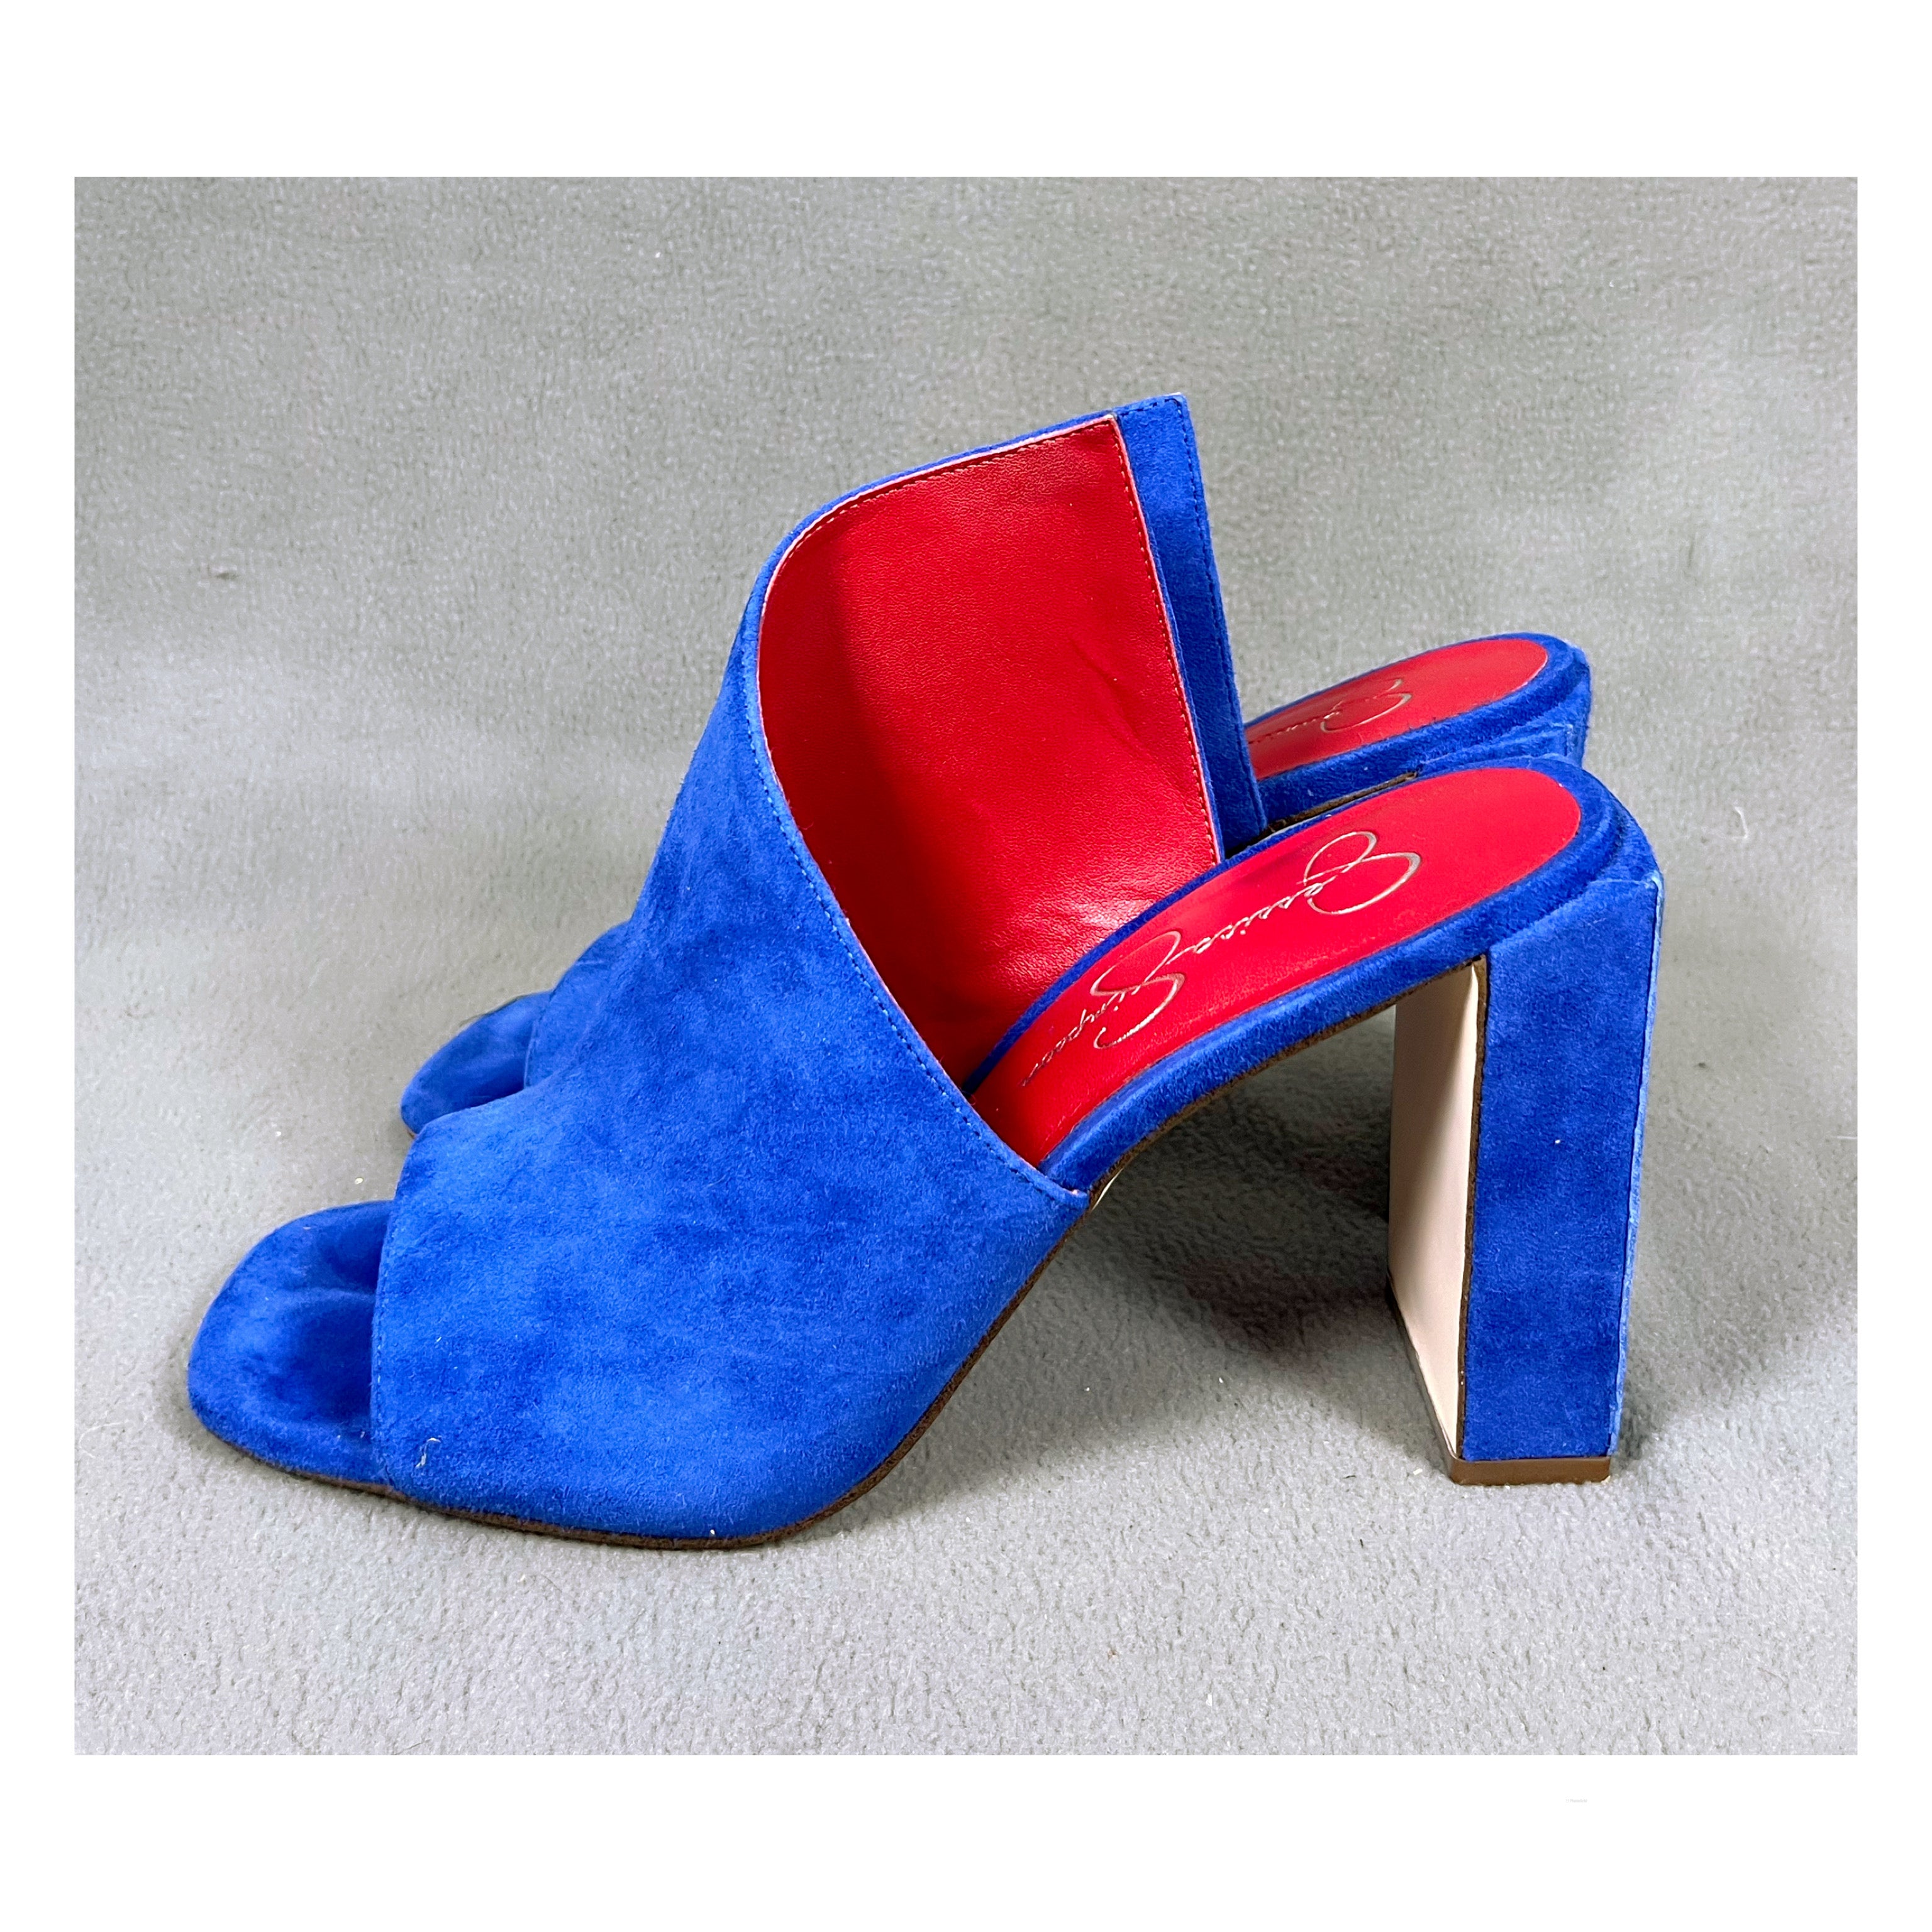 Jessica Simpson cobalt blue shoes, size 9